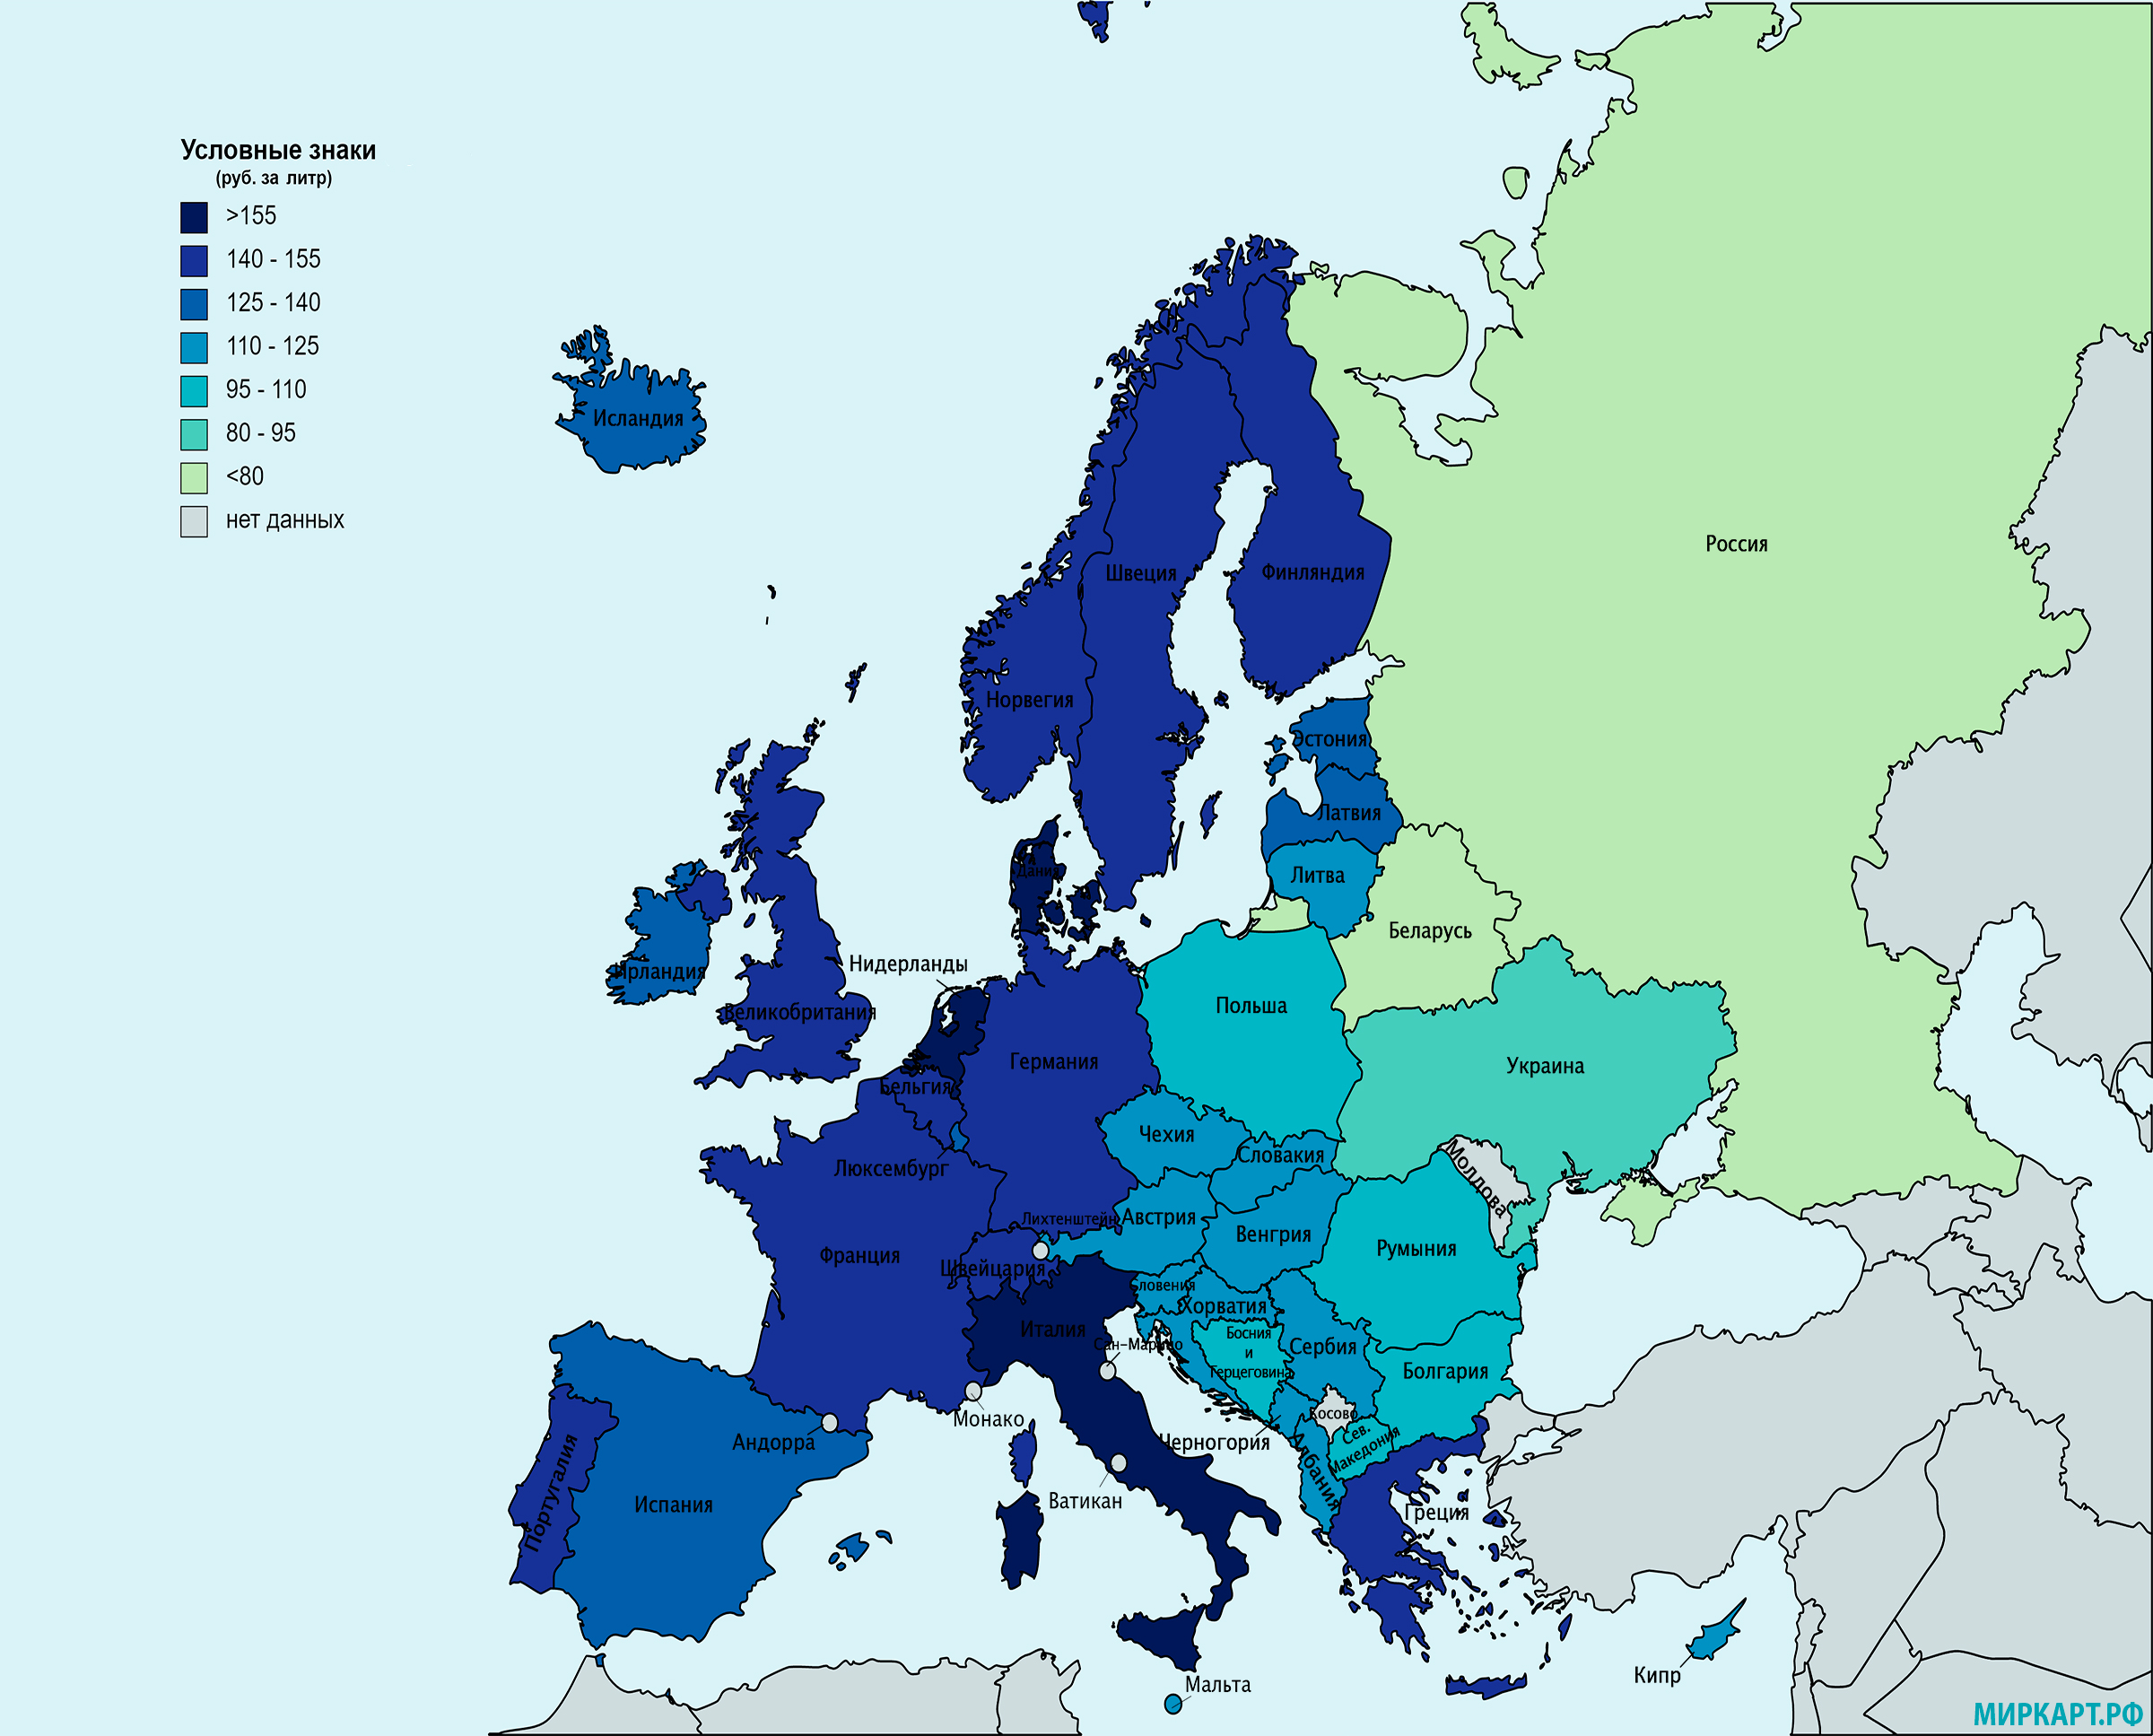 Сборник карт Европы различной тематики